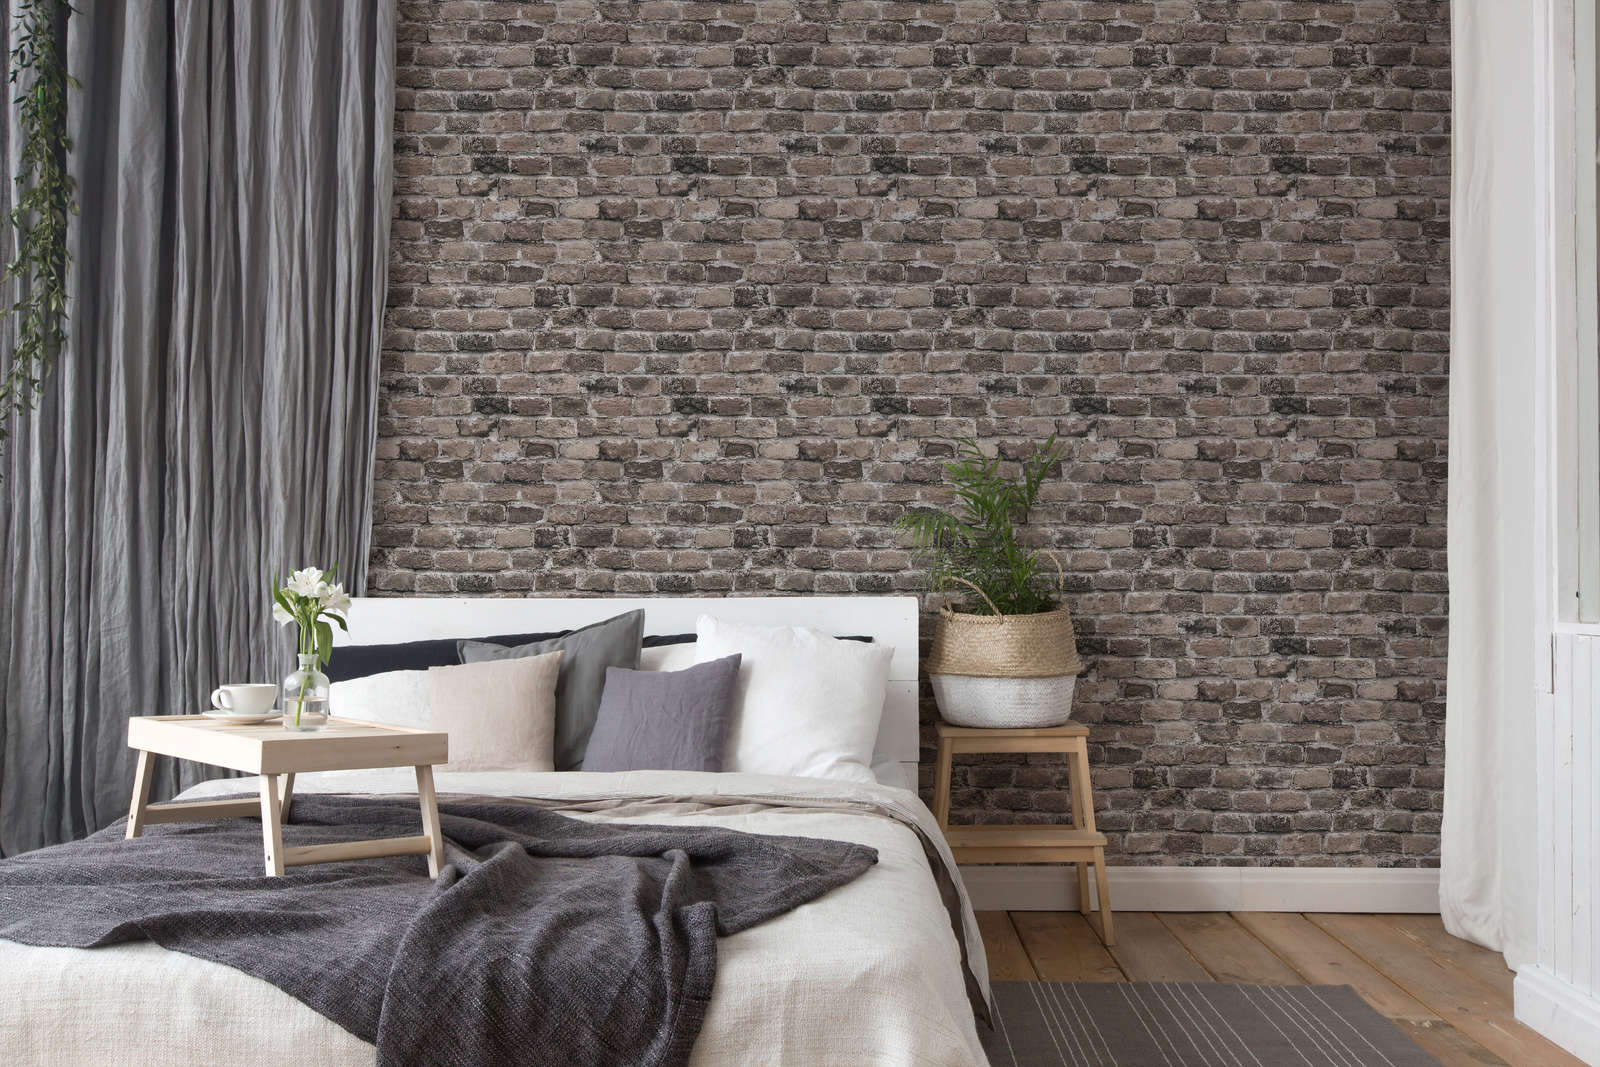             Mur de briques papier peint intissé - gris, marron, beige
        